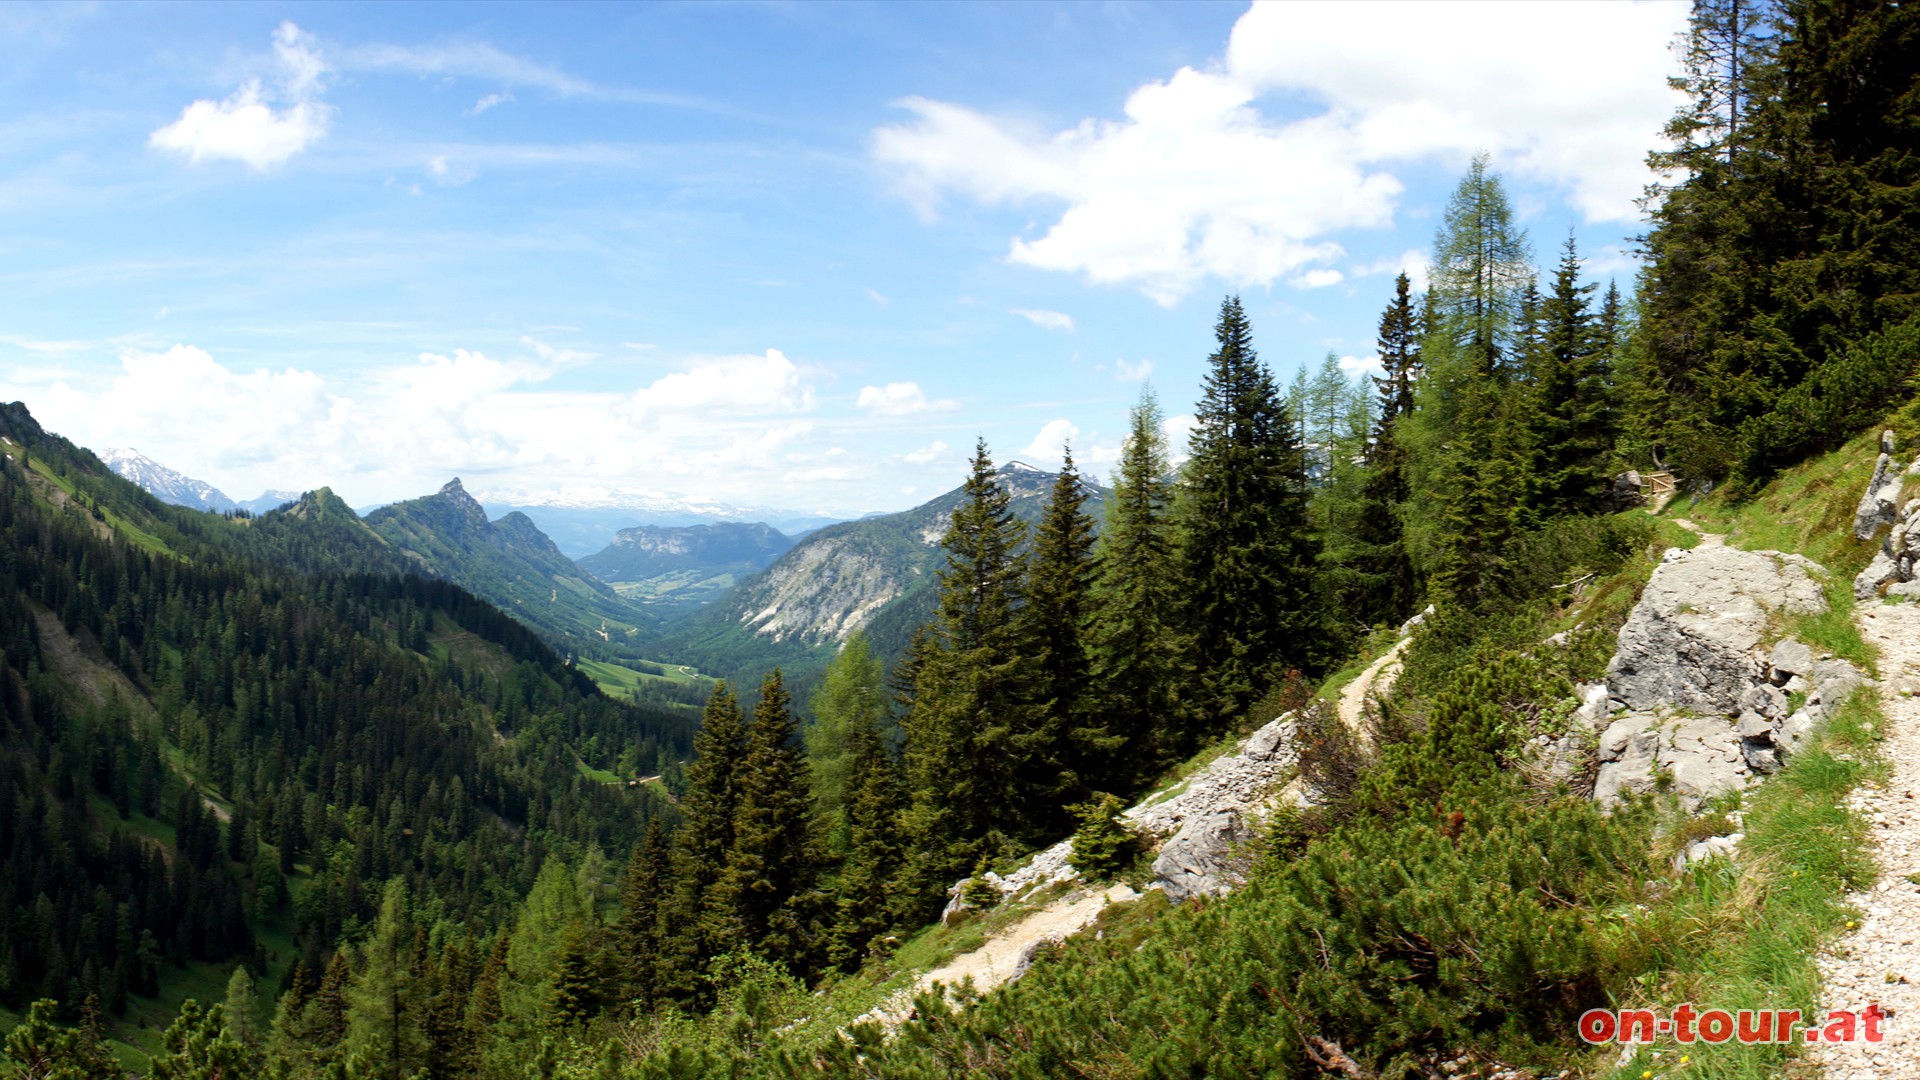 Vom Sattel aus den Grazer Steig nach Nordwesten bergauf. Interessante Ausblicke zu Dachstein und Grimming beleben die Szenerie.